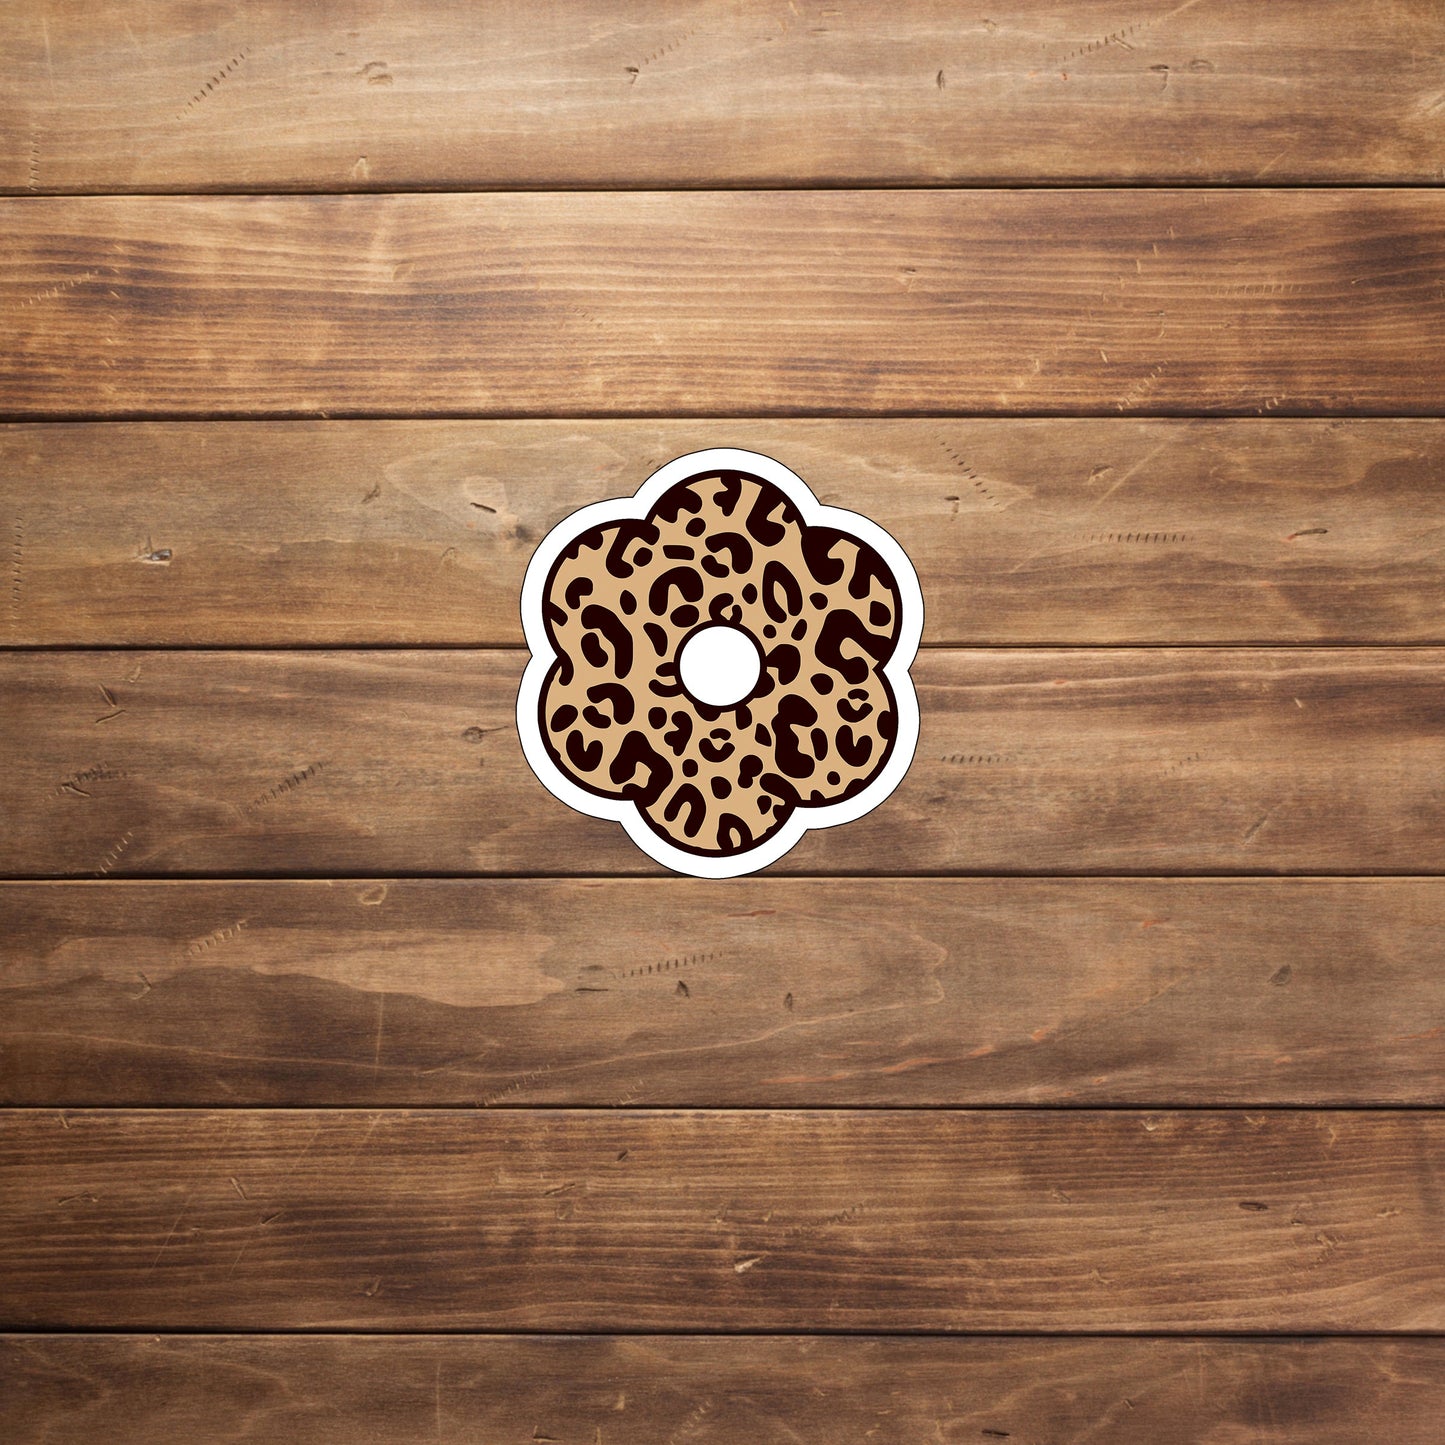 leopardflower  Sticker,  Vinyl sticker, laptop sticker, Tablet sticker